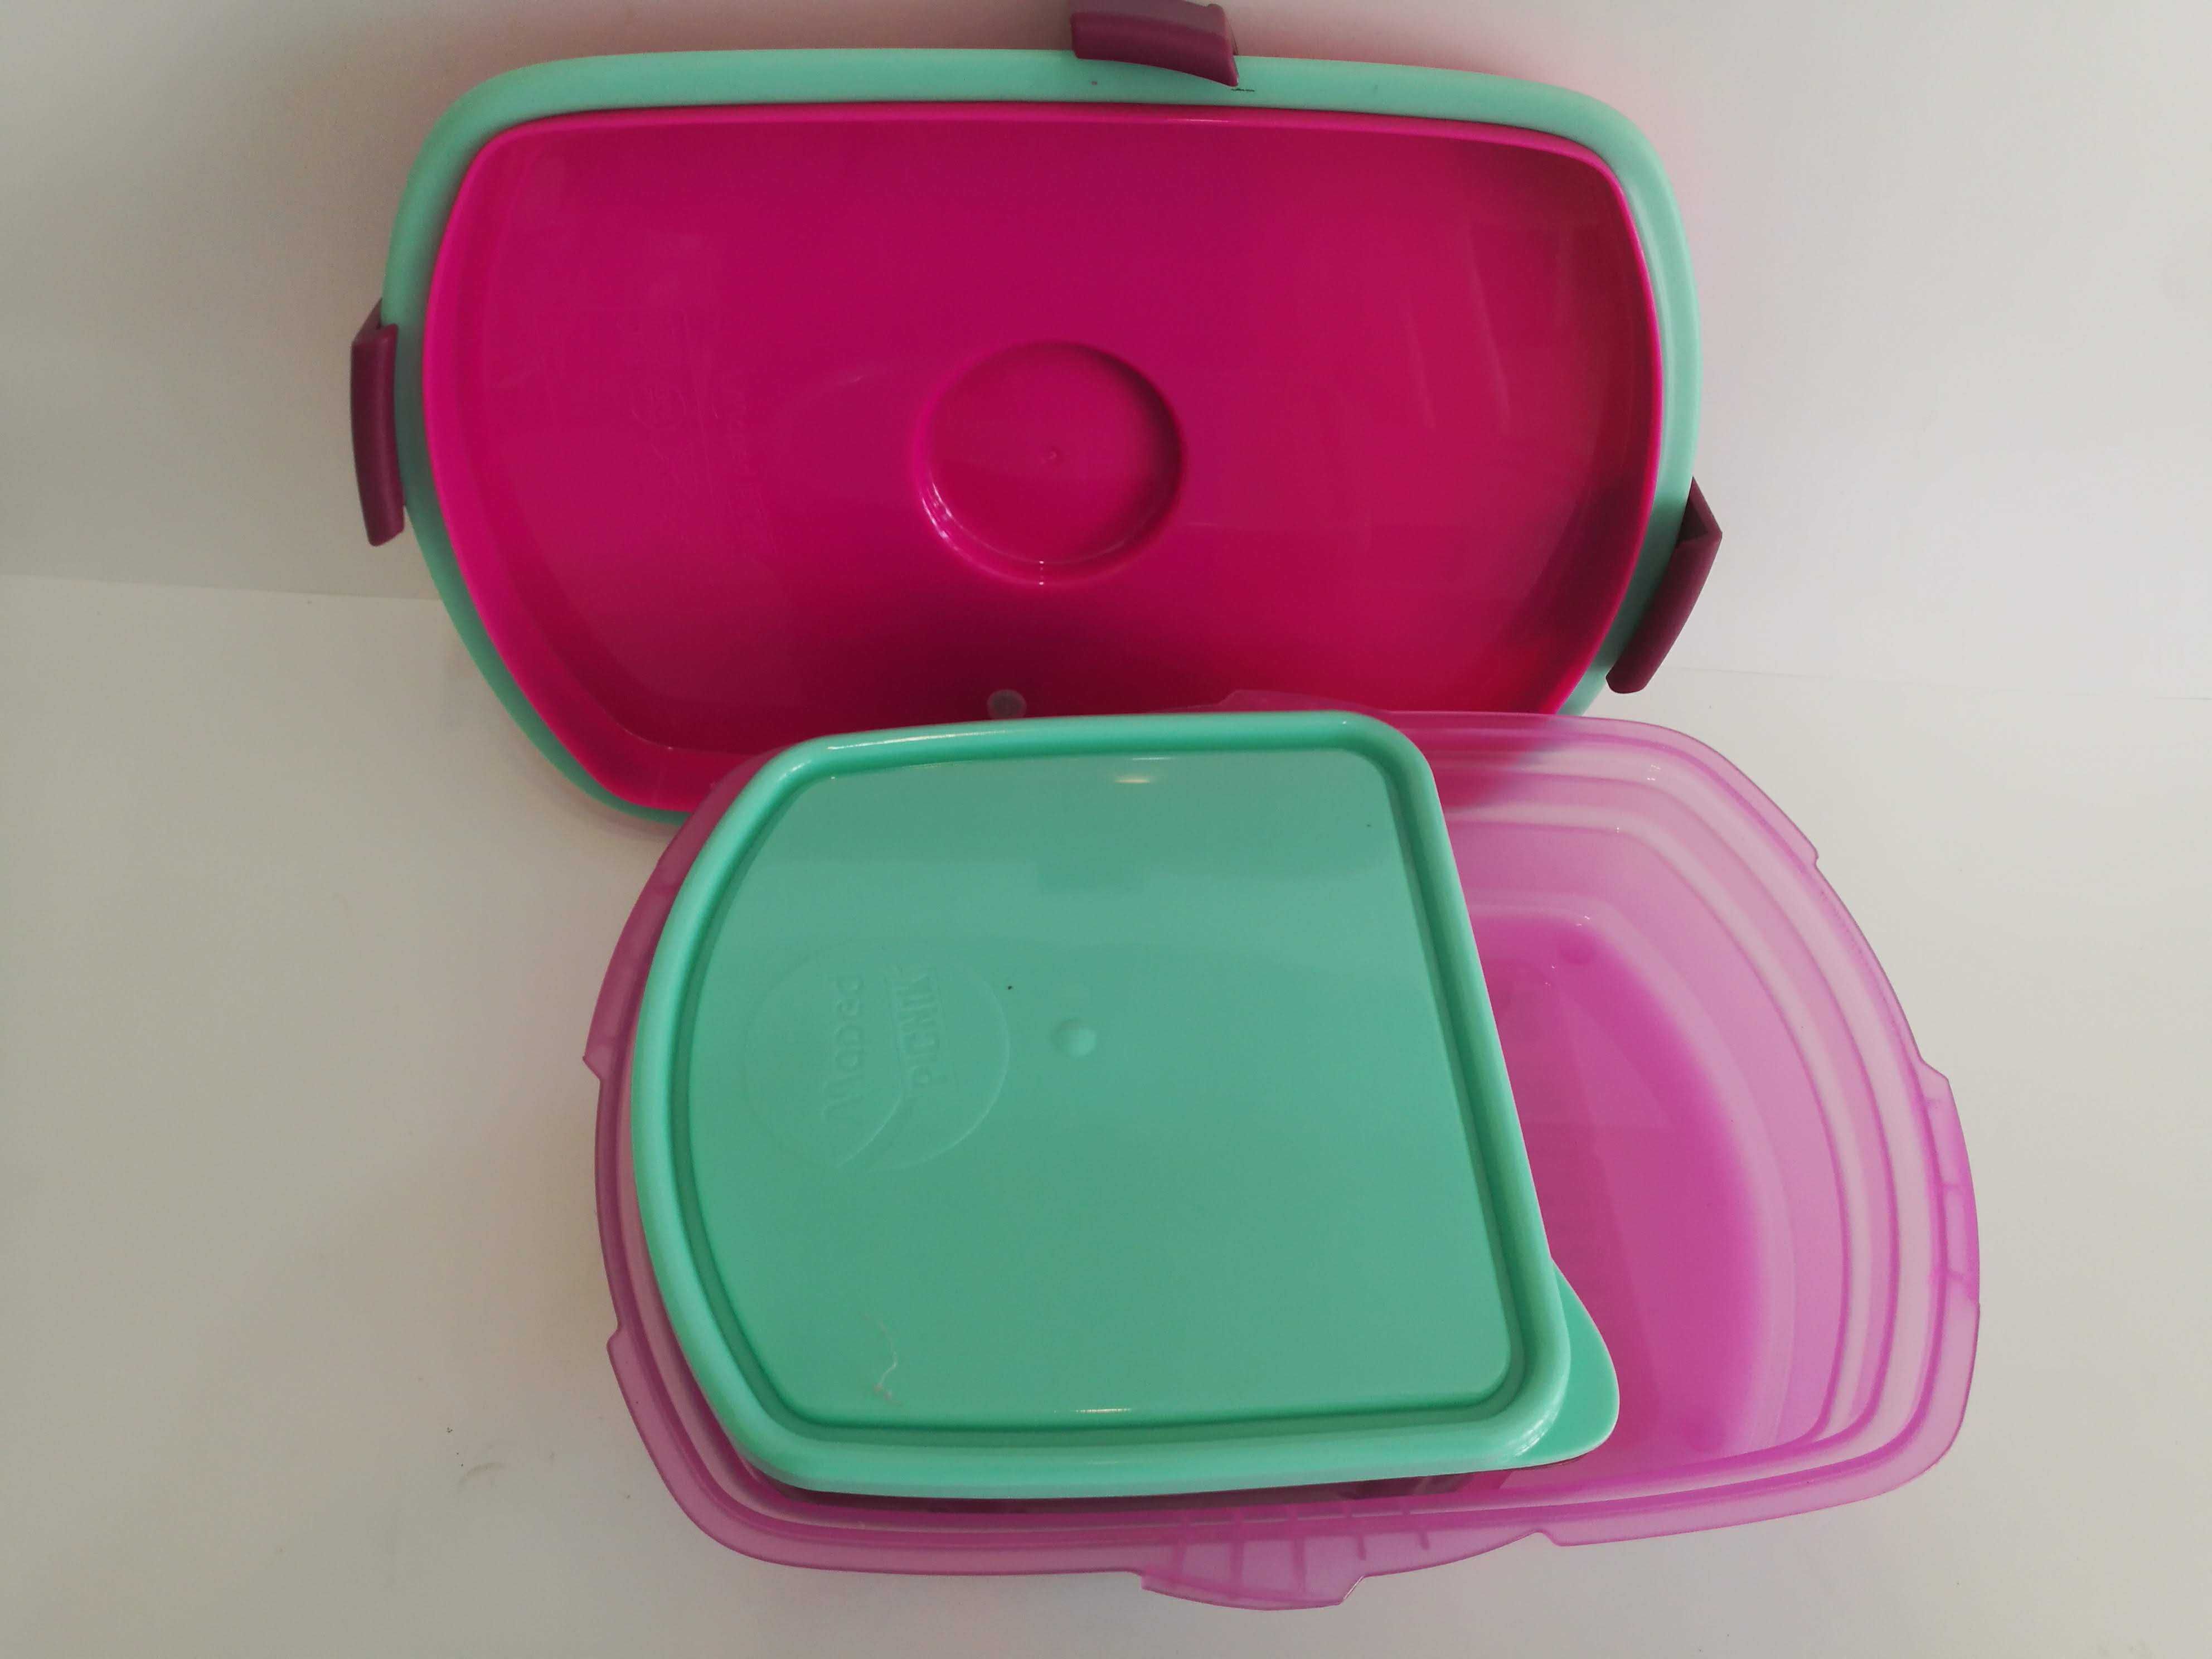 Garrafa e lancheira marmita maped picnik rosa plastico sem BPA